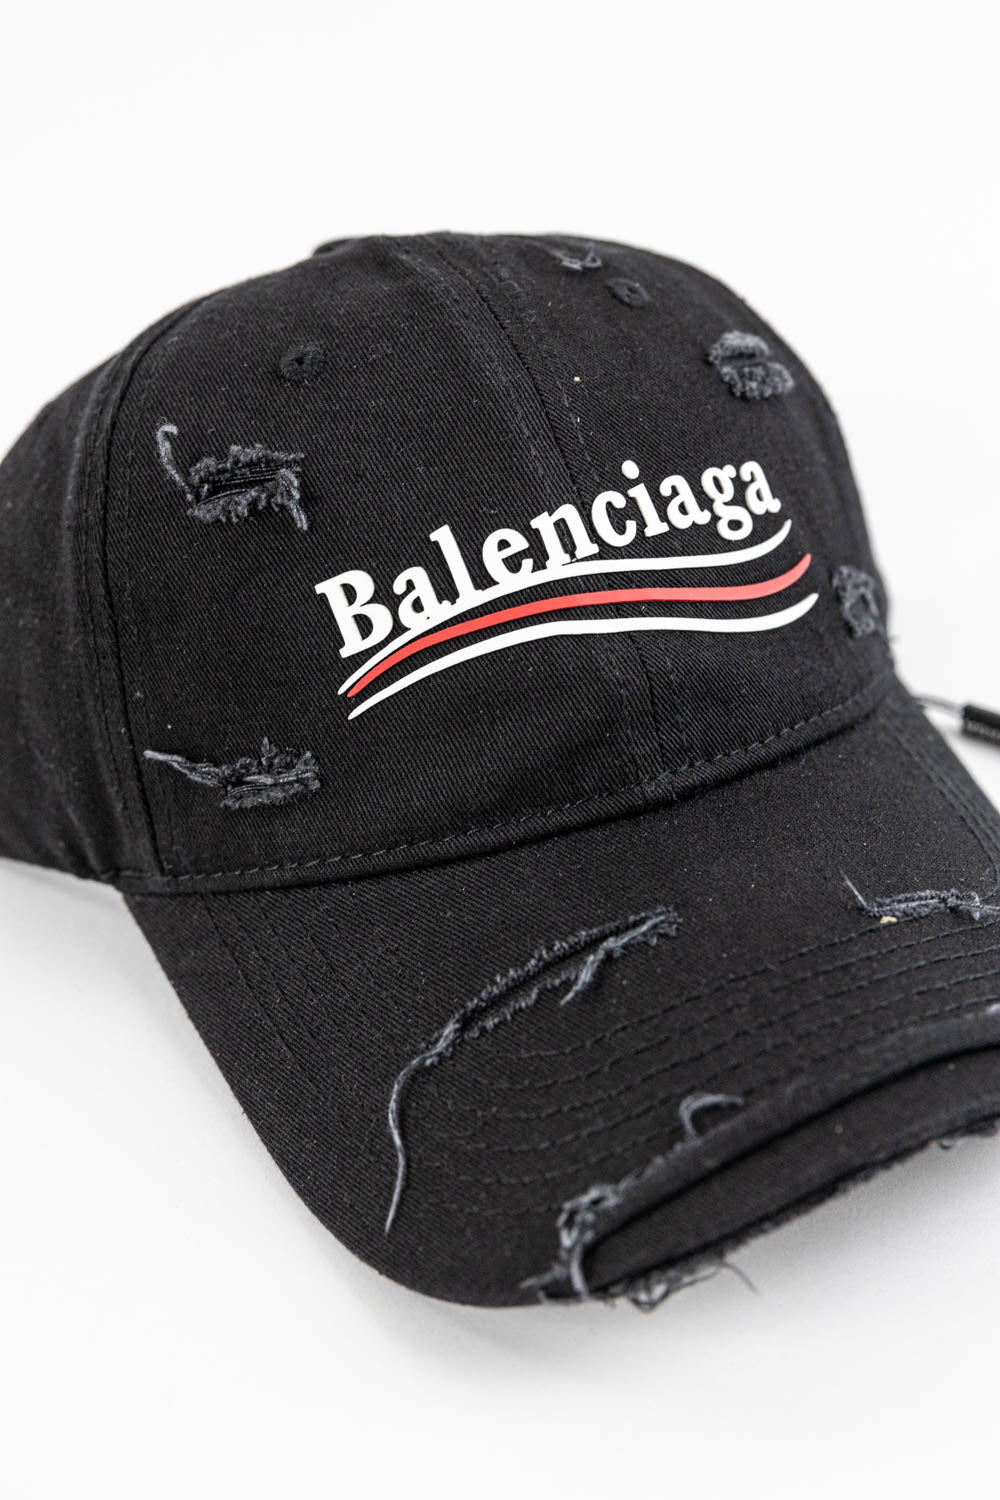 Balenciaga Political Campaign Destroyed cap